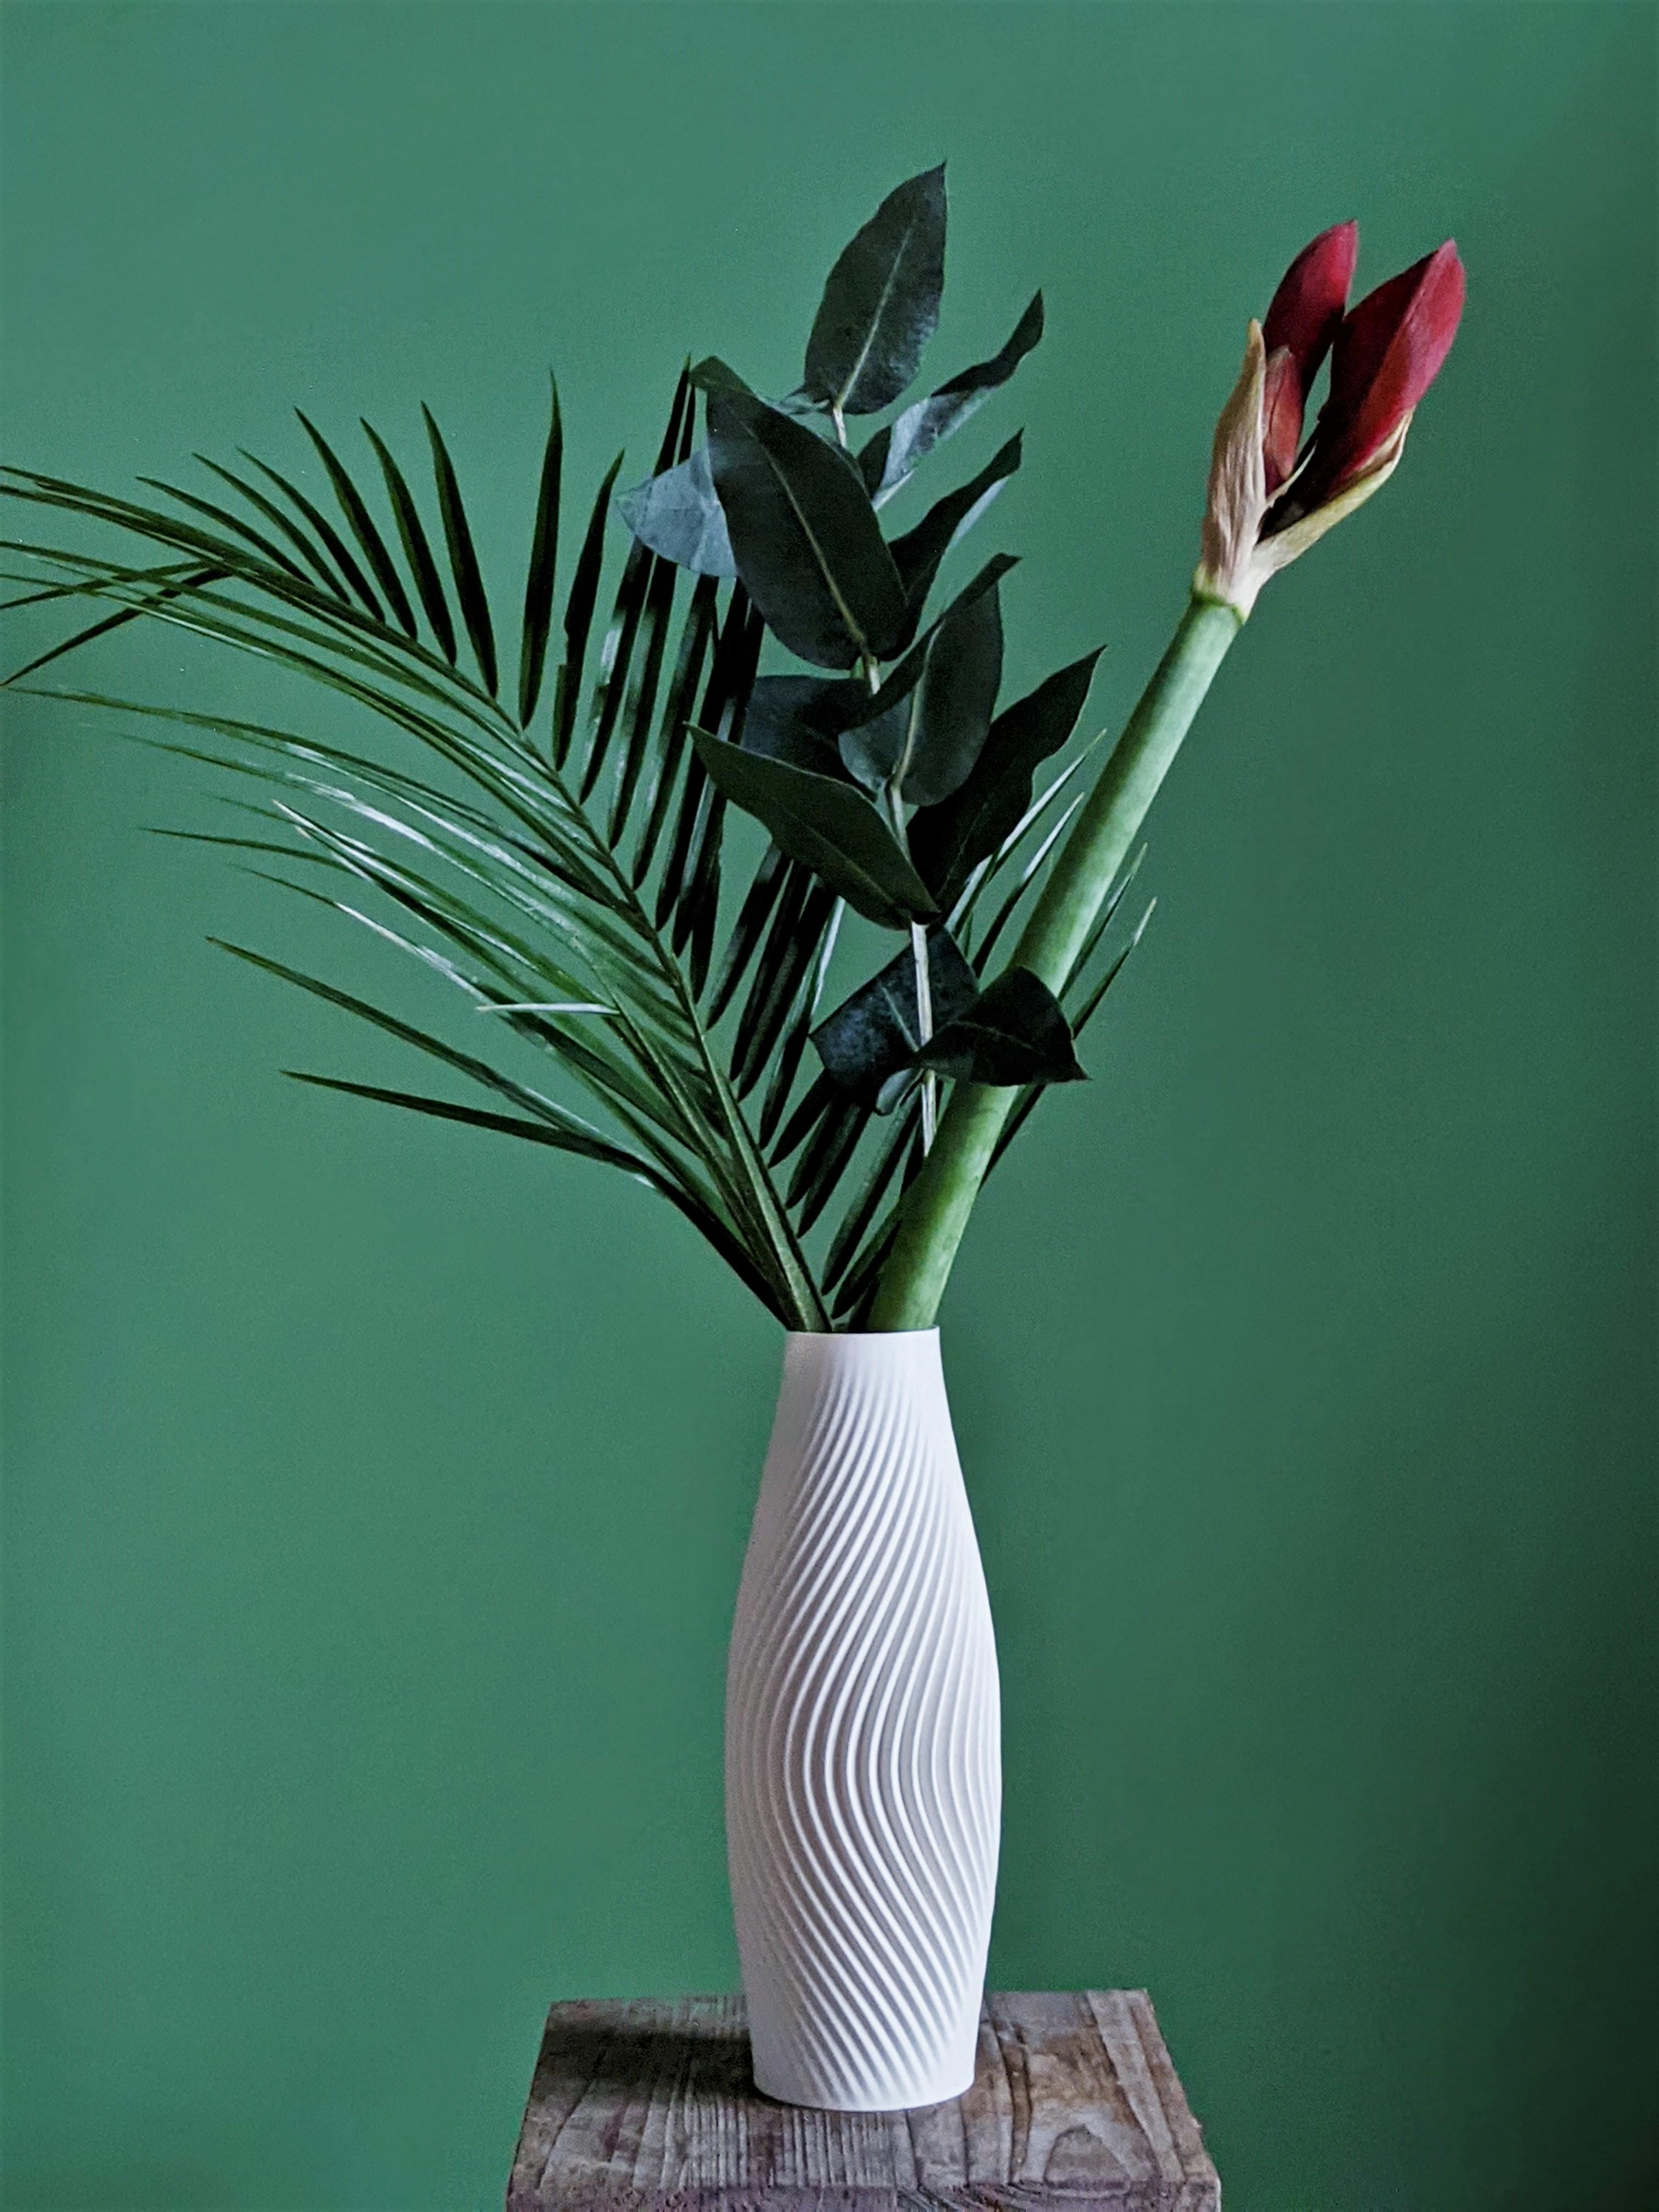 Modern Vase Design "Volute" minimalistic spiral design | STL to 3D print 3d model